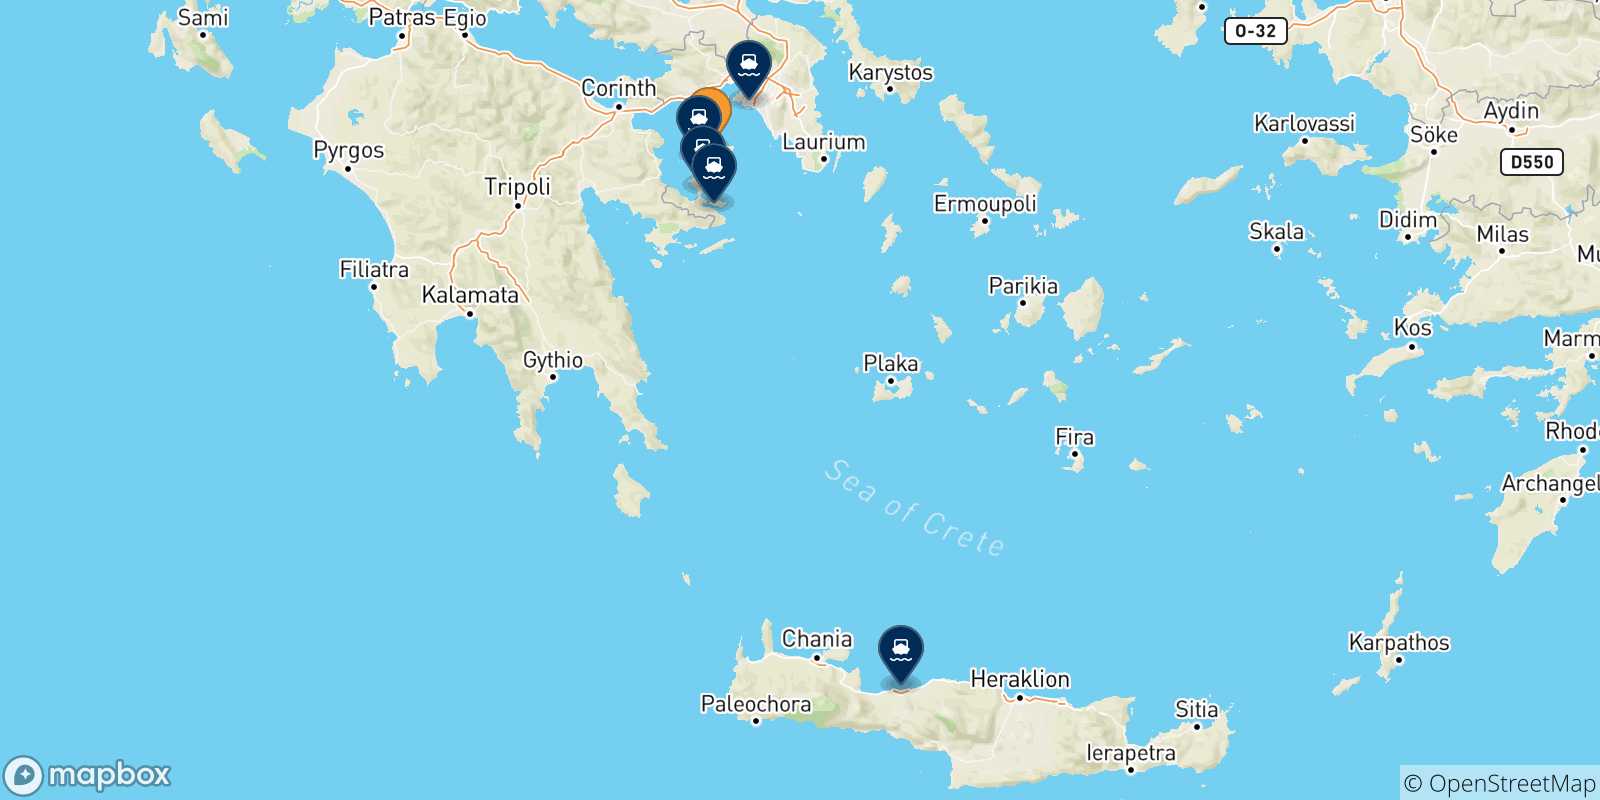 Mappa delle possibili rotte tra Aegina e la Grecia